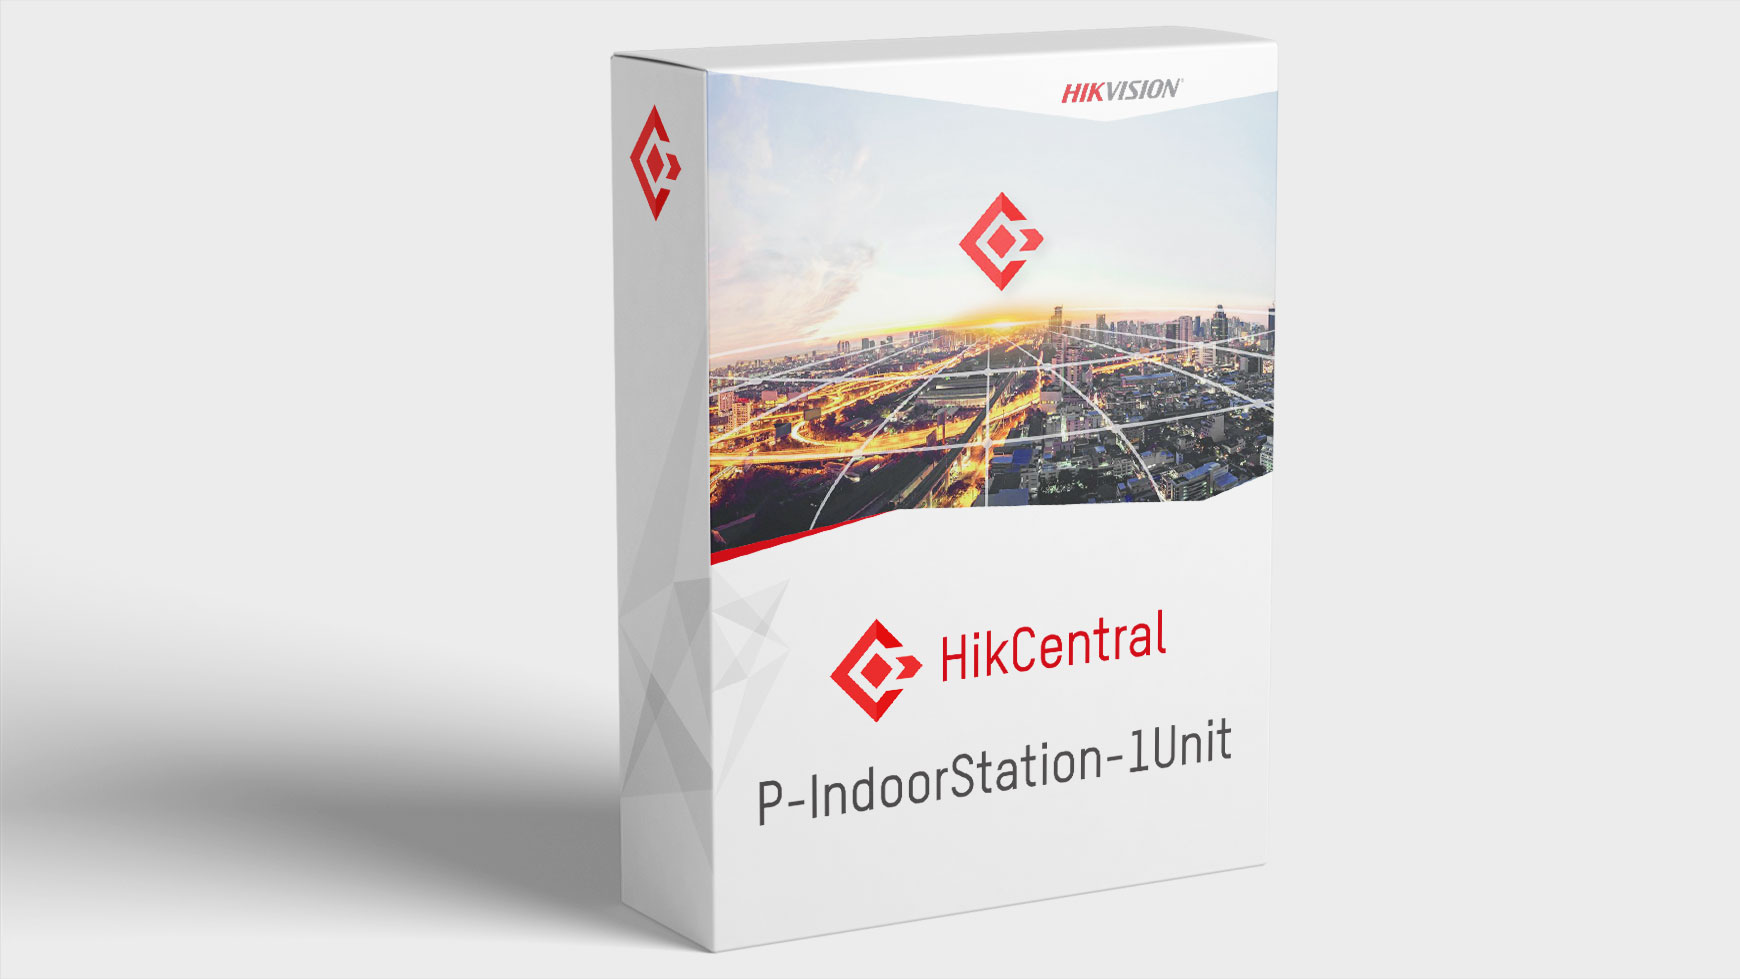 Hikvision HikCentral-P-IndoorStation-1Unit